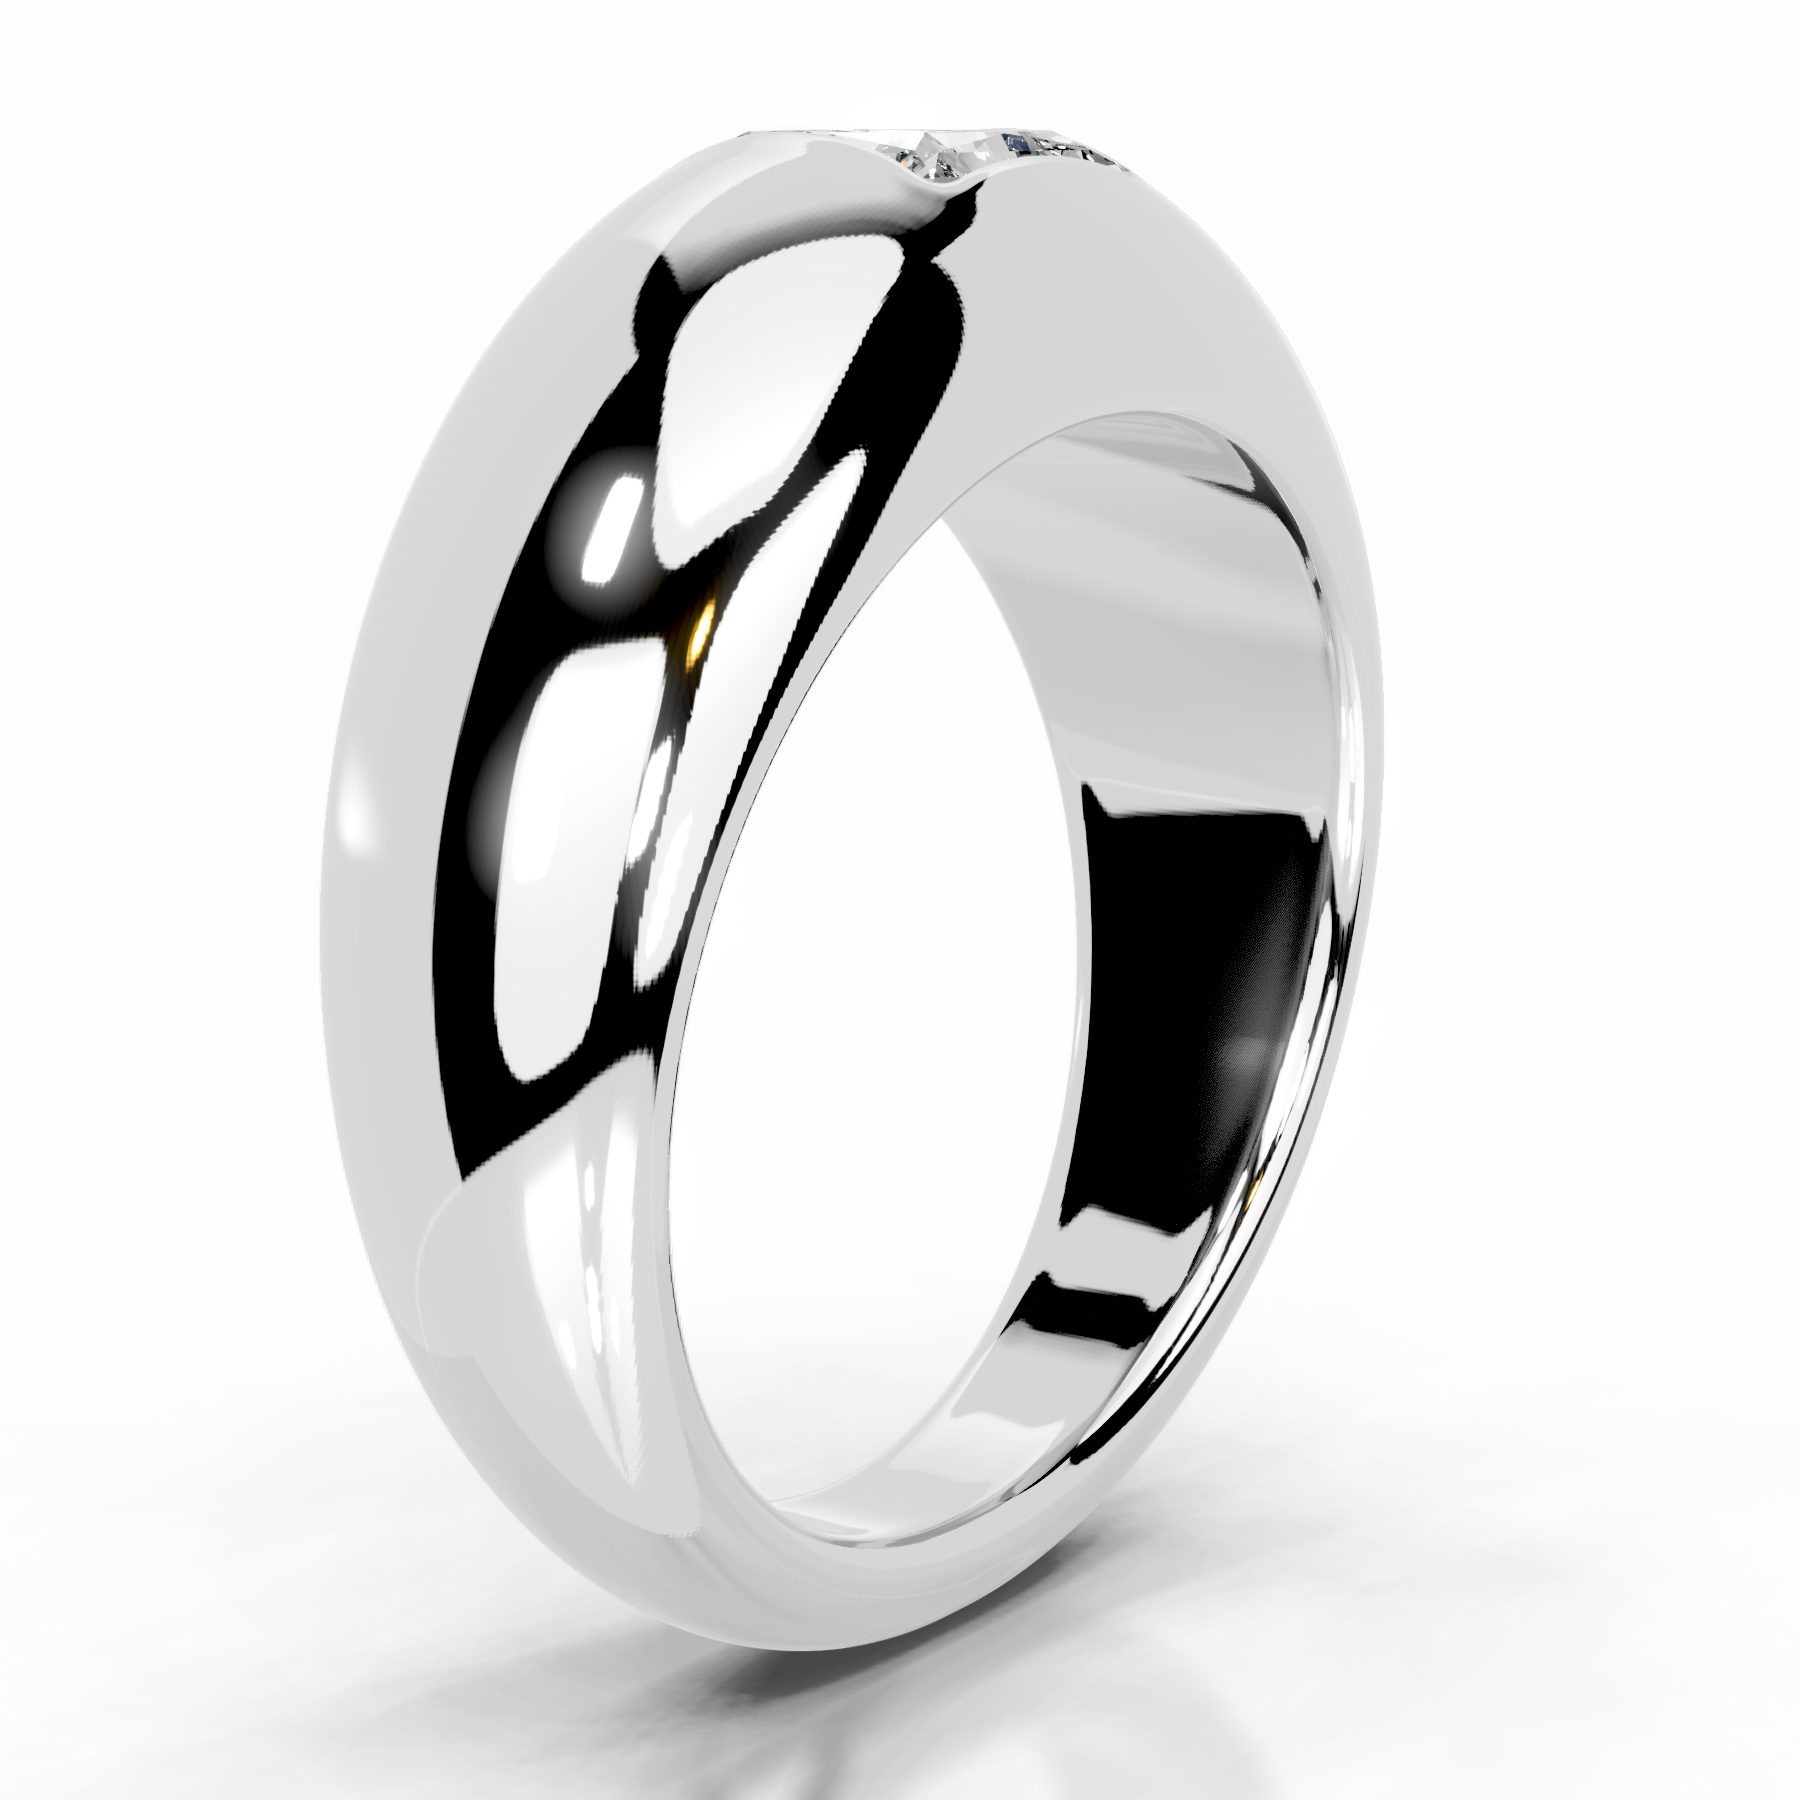 Aaliyah Lab Grown Diamond Ring   (1 Carat) -14K White Gold